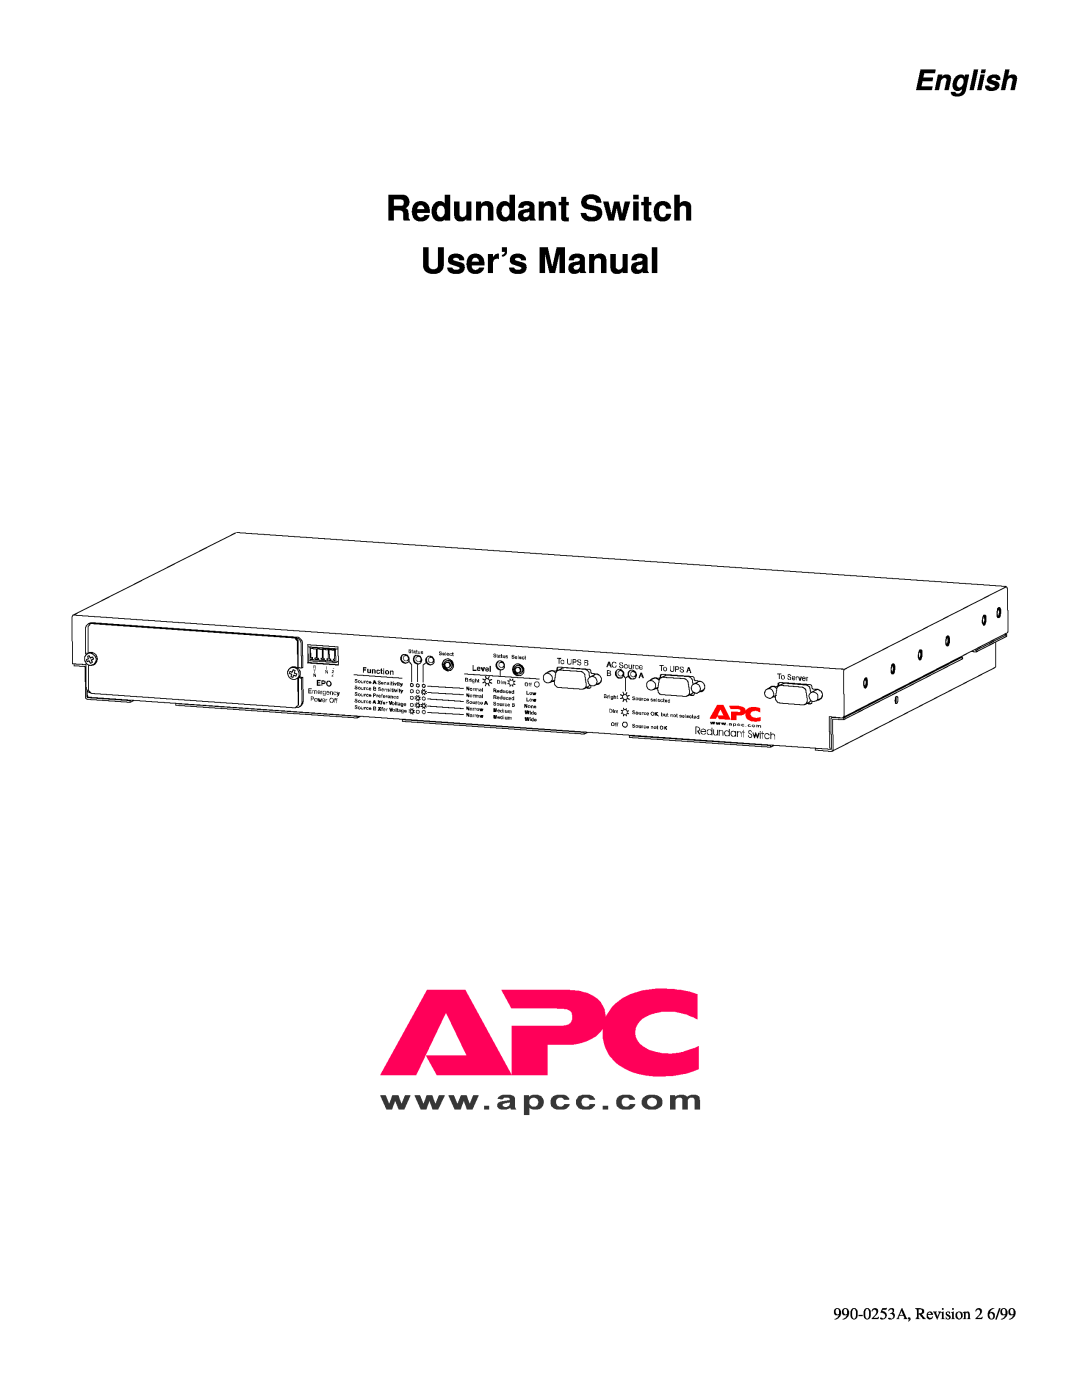 APC SU042-1 3000 VA, SU043 1400 VA, SU041 1400 VA, SU42-2 3000 VA user manual Redundant Switch User’s Manual, English 